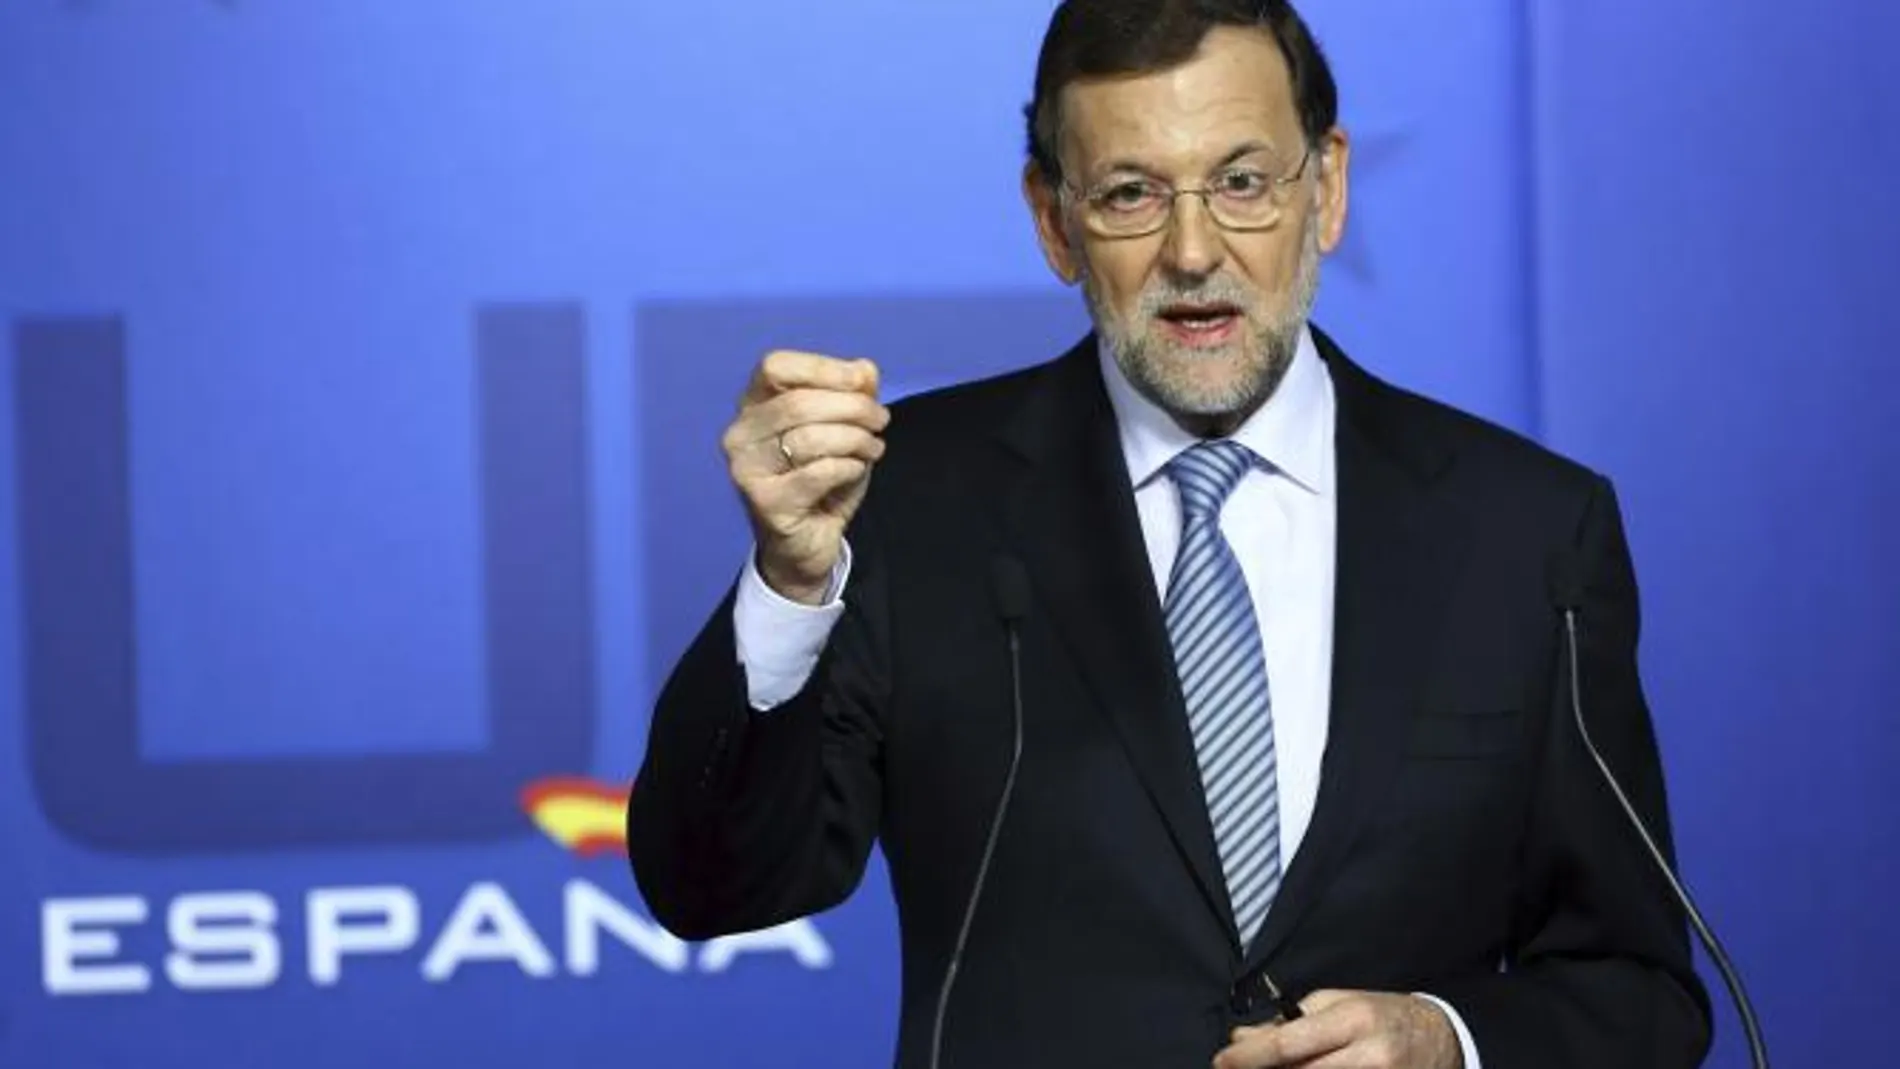 Sólo nos queda Rajoy, por Martín Prieto